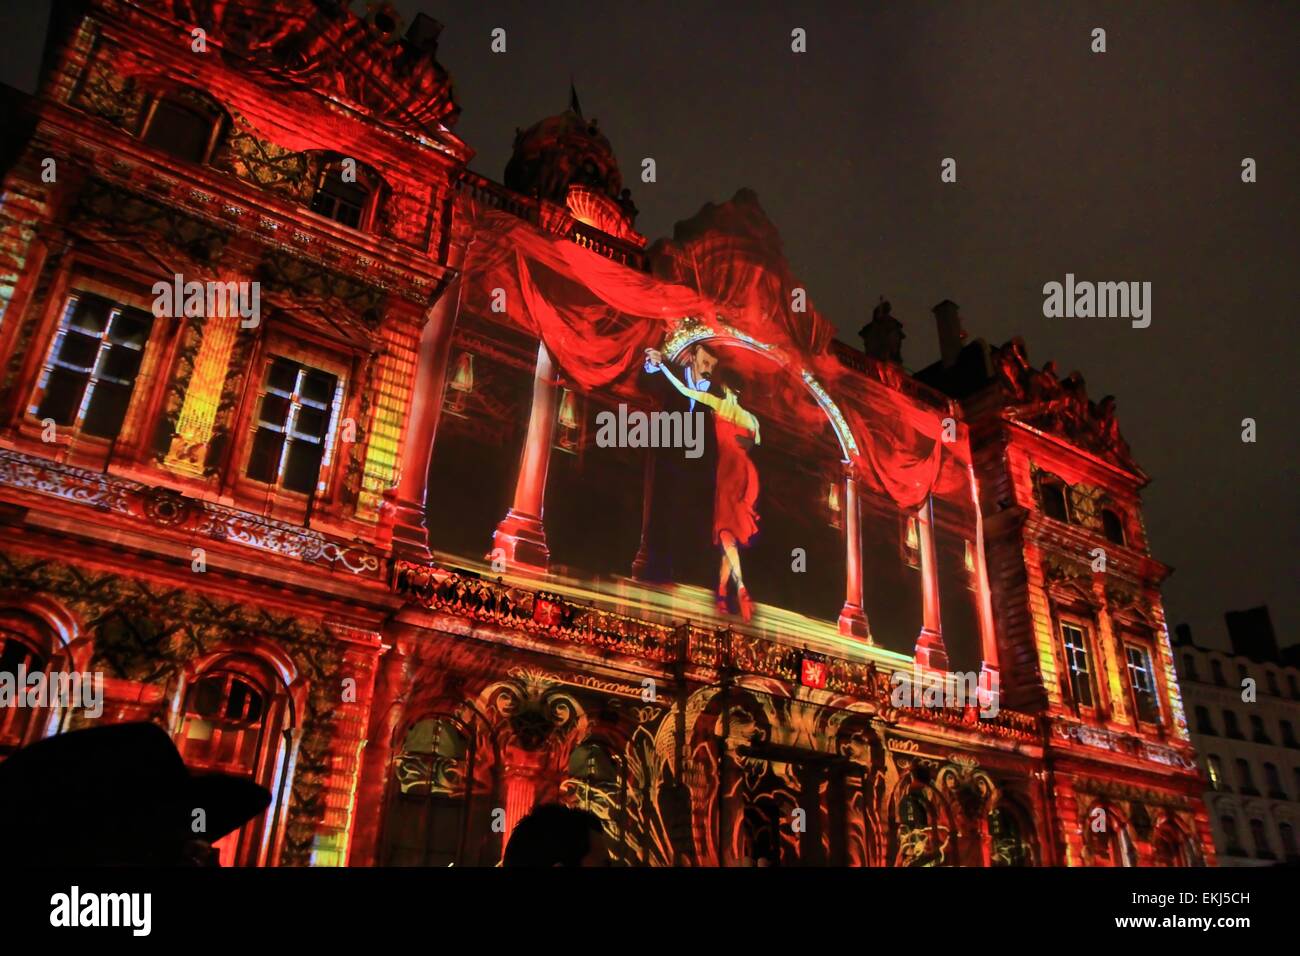 Festival of lights, Place des Terreaux, Lyon, France Stock Photo